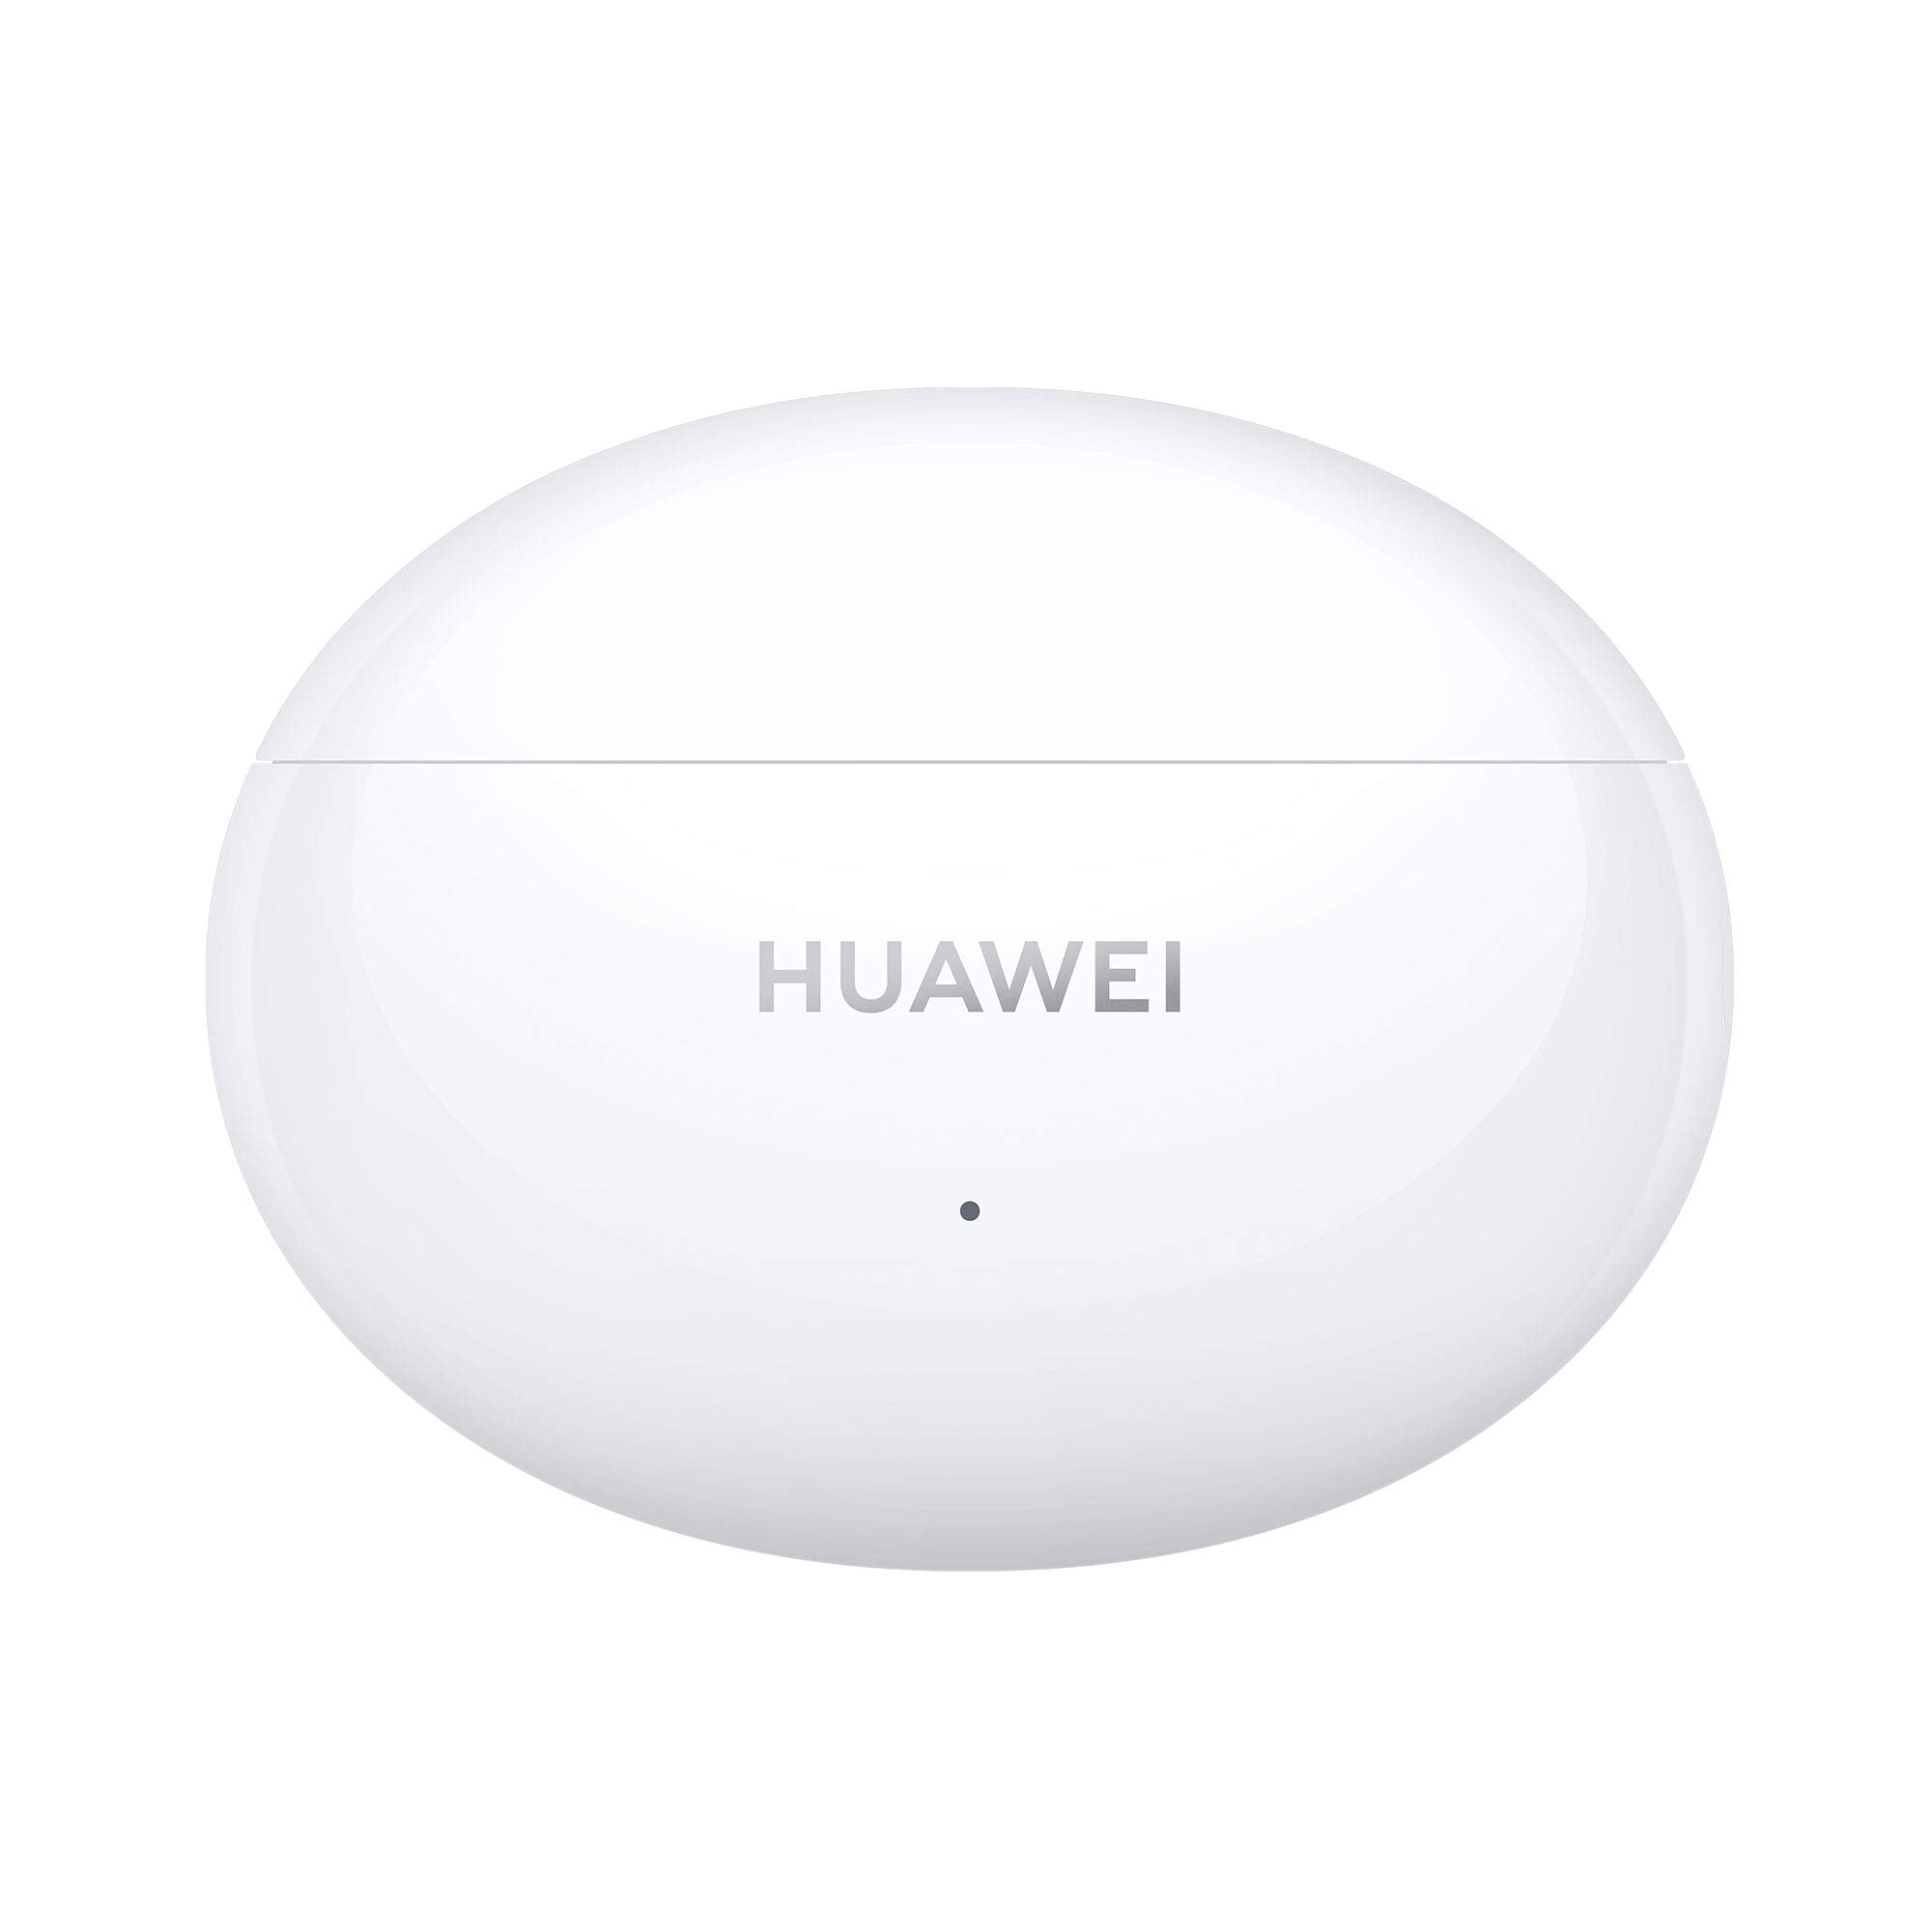 Huawei Wireless In-Ear FreeBuds 4i | Halabh.com